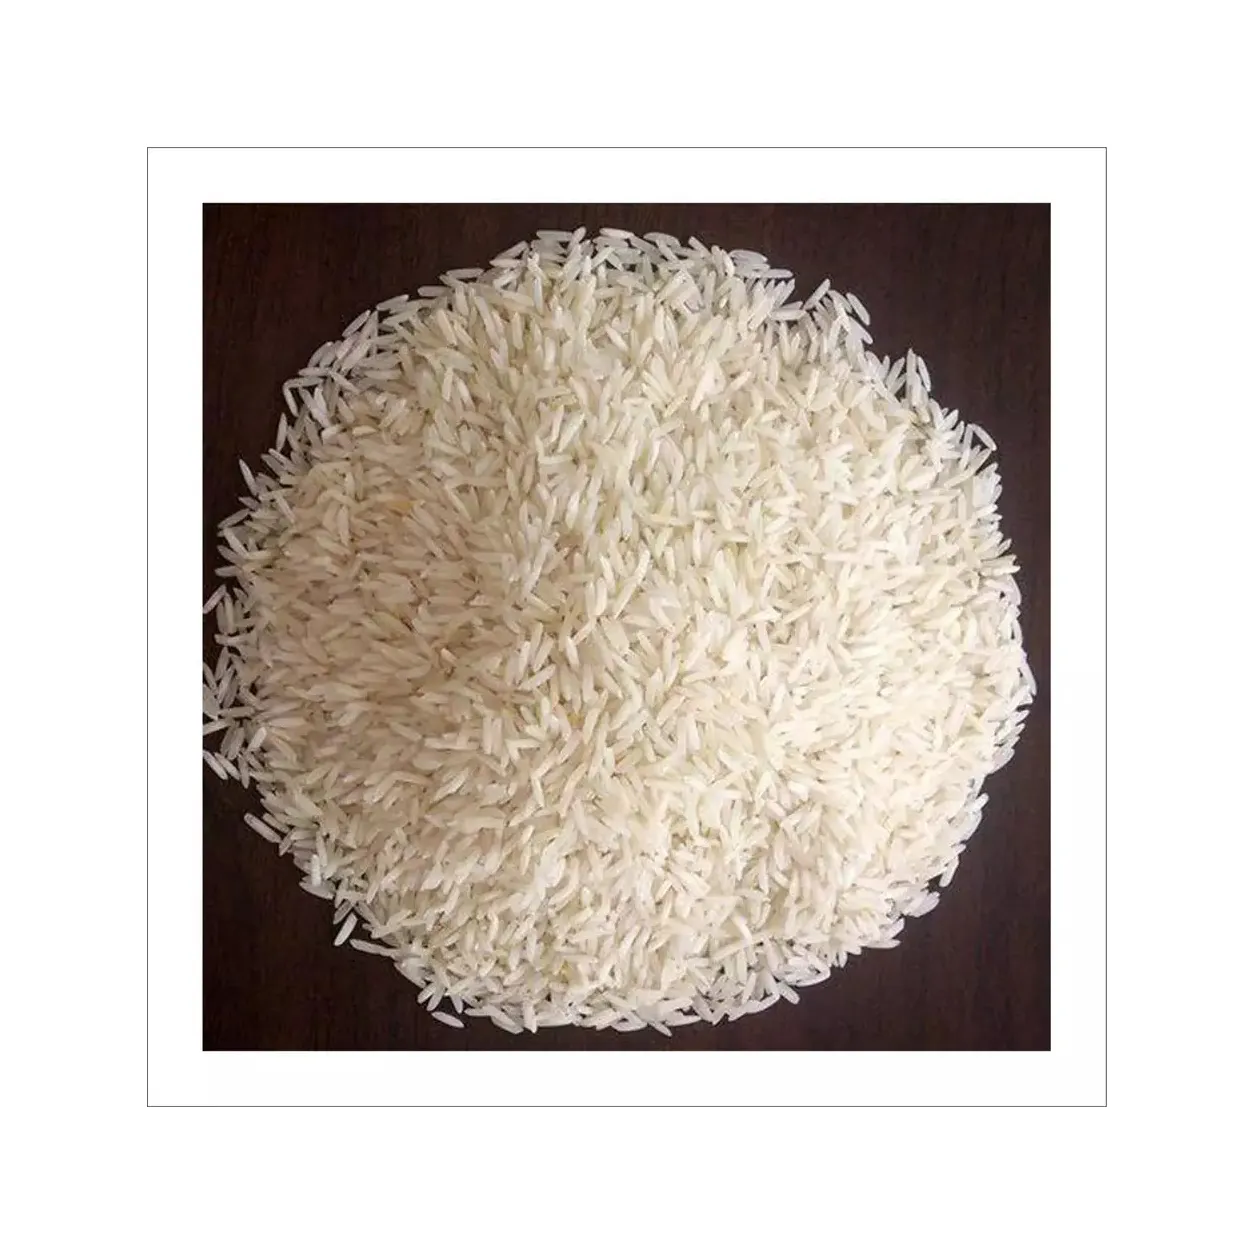 Рис басмати, жасминовый рис, пропаренный рис с длинным зерном